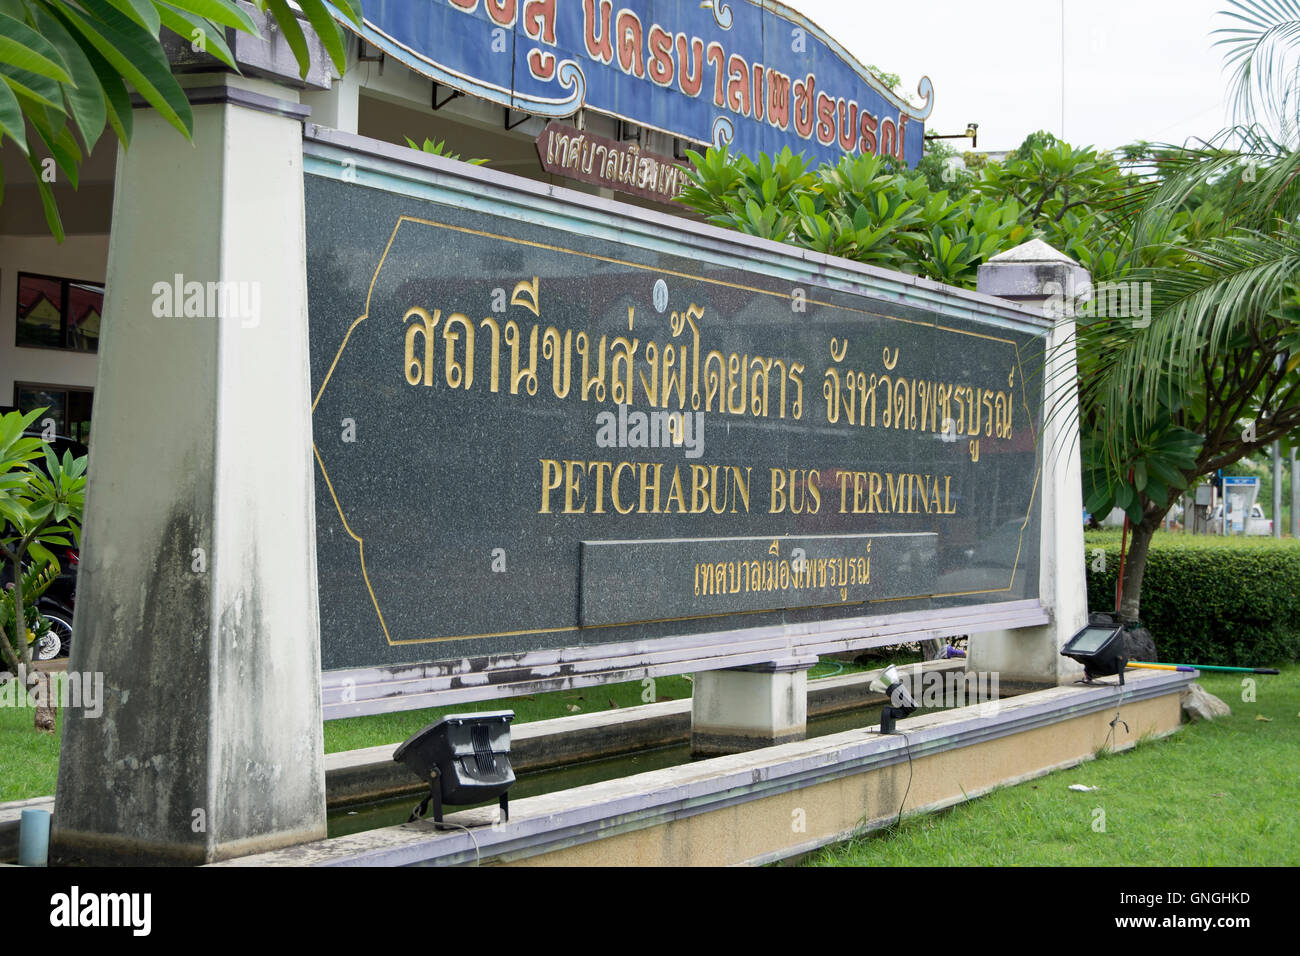 Signo de la terminal de autobuses de phetchabun Phetchabun, Tailandia (usando el menos común la ortografía inglesa de 'petchabun') Foto de stock